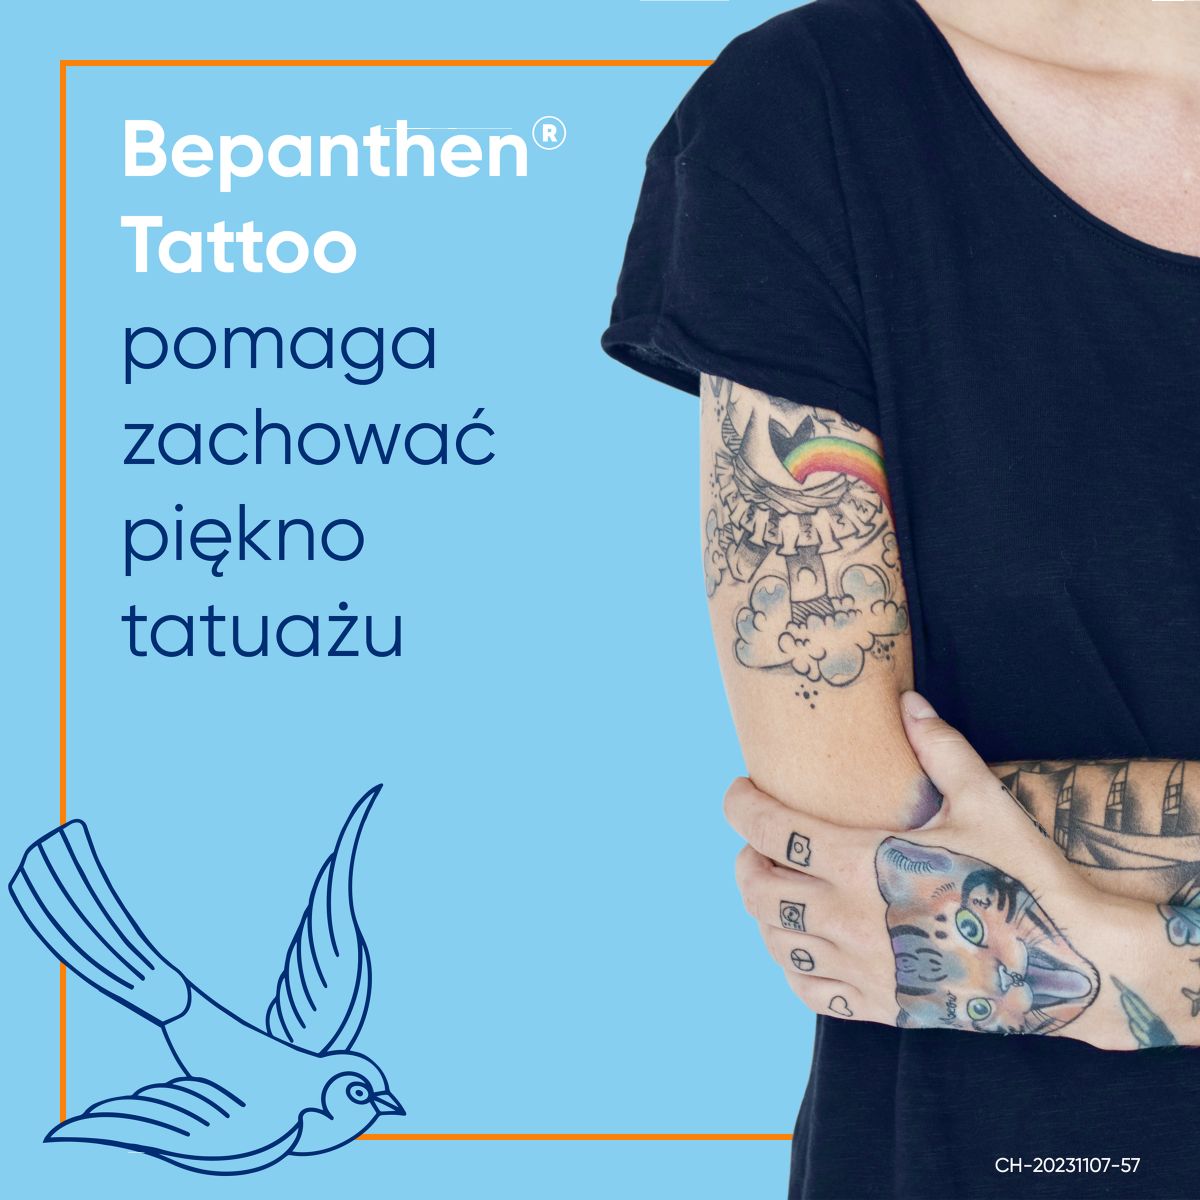 Bepanthen Tattoo Maść zapewniająca pięlęgnację tatuażu 50g